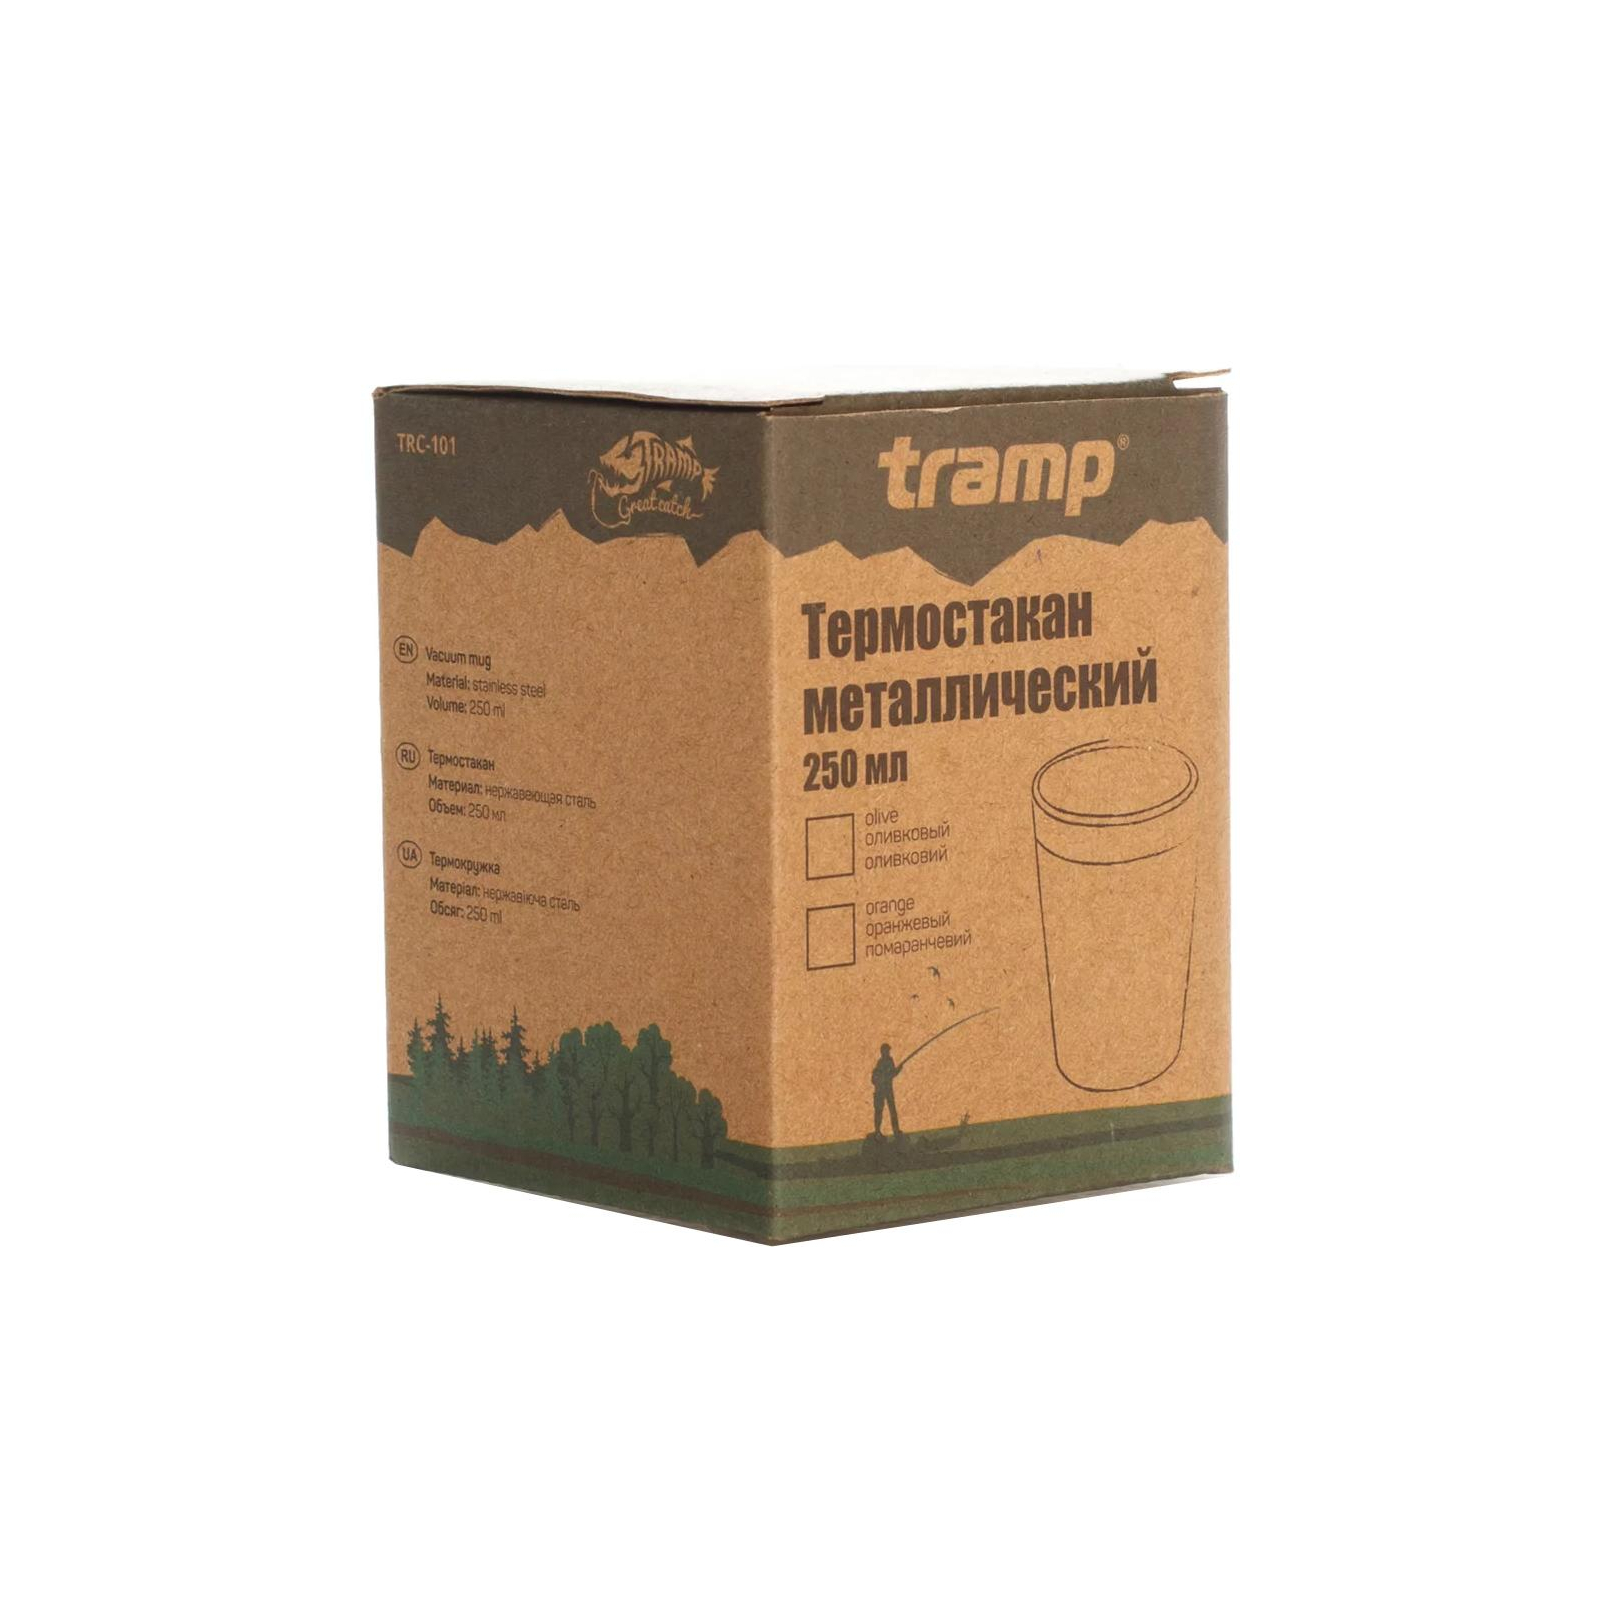 Термокружка Tramp 250мл оливковая (TRC-101 olive) изображение 4